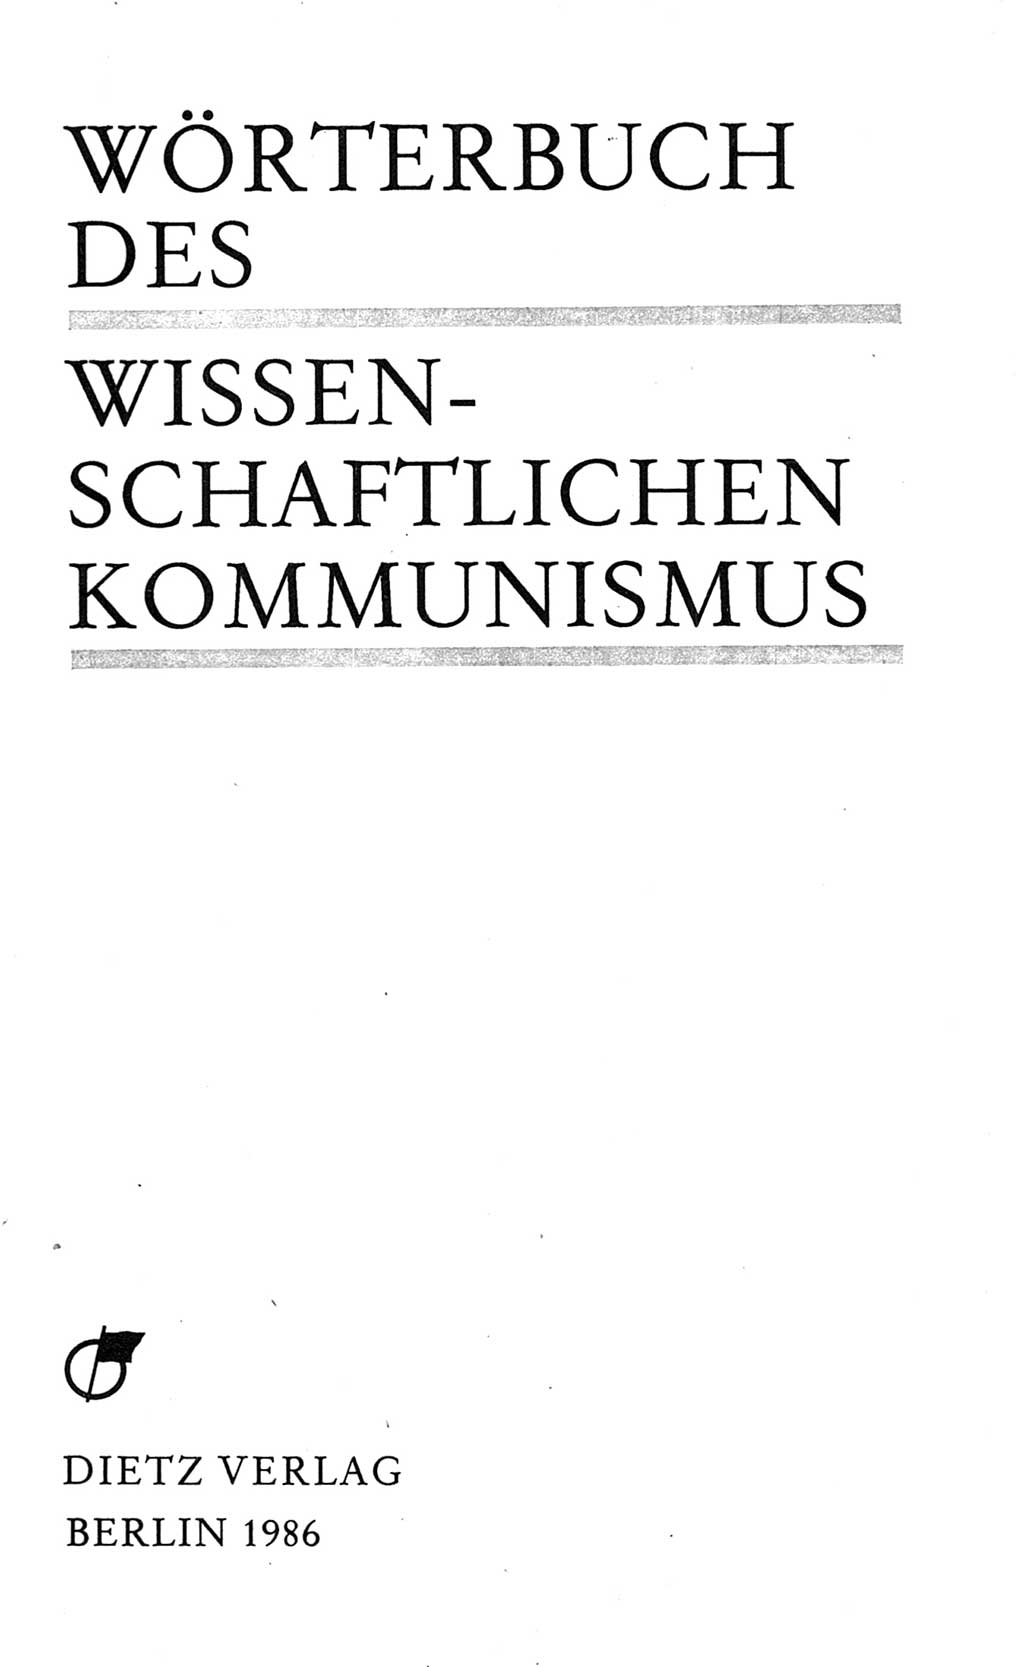 Wörterbuch des wissenschaftlichen Kommunismus [Deutsche Demokratische Republik (DDR)] 1986, Seite 3 (Wb. wiss. Komm. DDR 1986, S. 3)